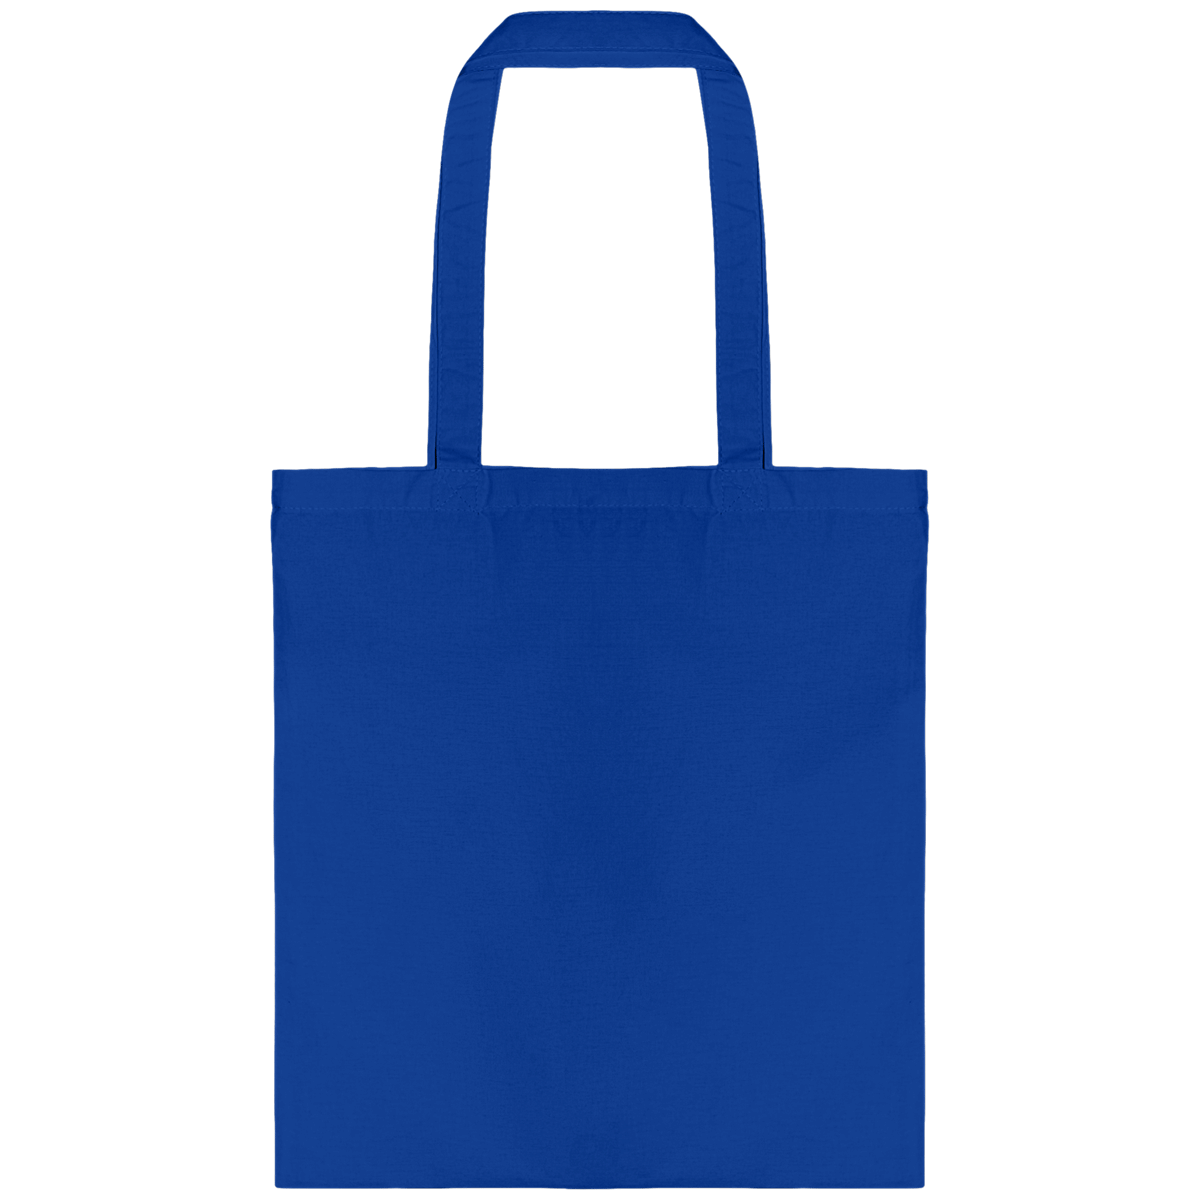 Personnalisez Votre Tote Bag Avec Tunetoo Royal Blue